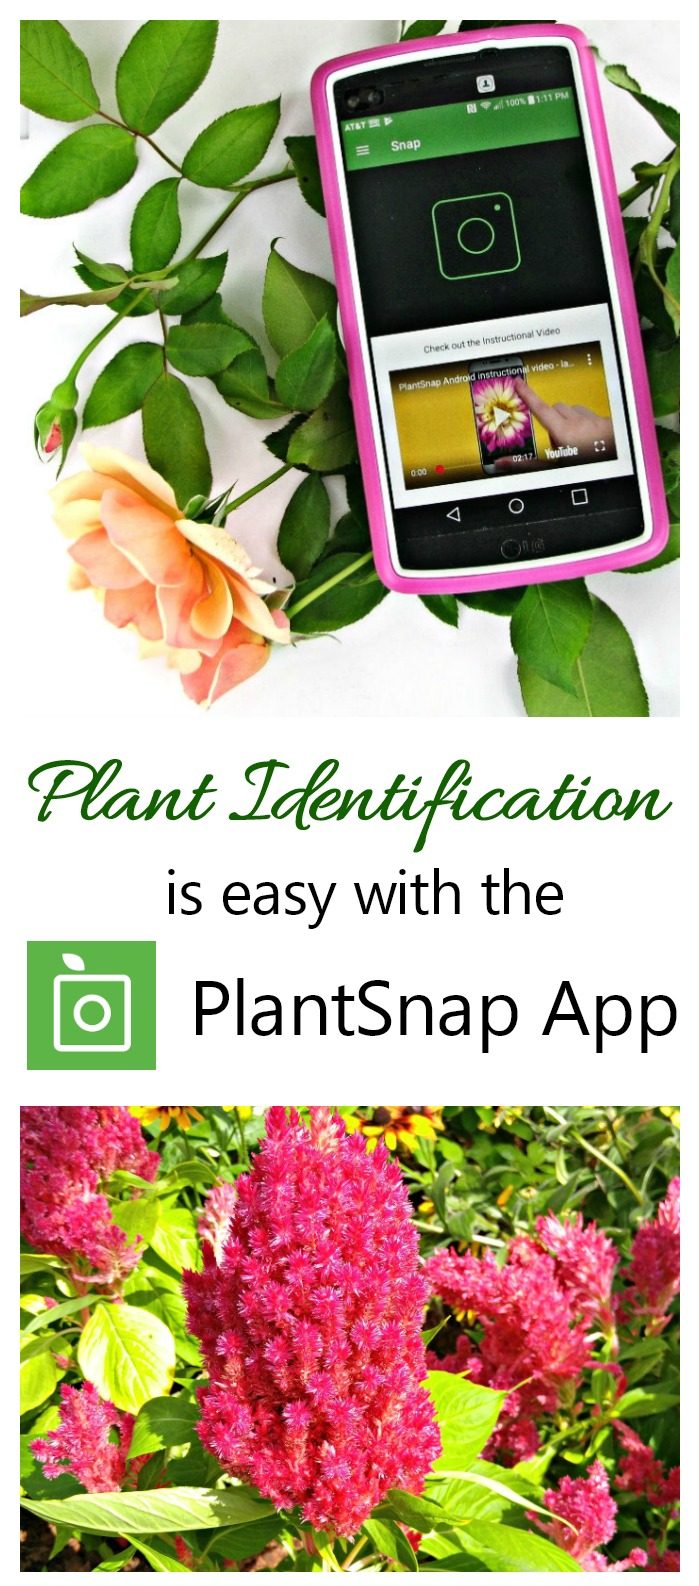 PlantSnap mobilā lietotne - padomi un triki labākajiem rezultātiem